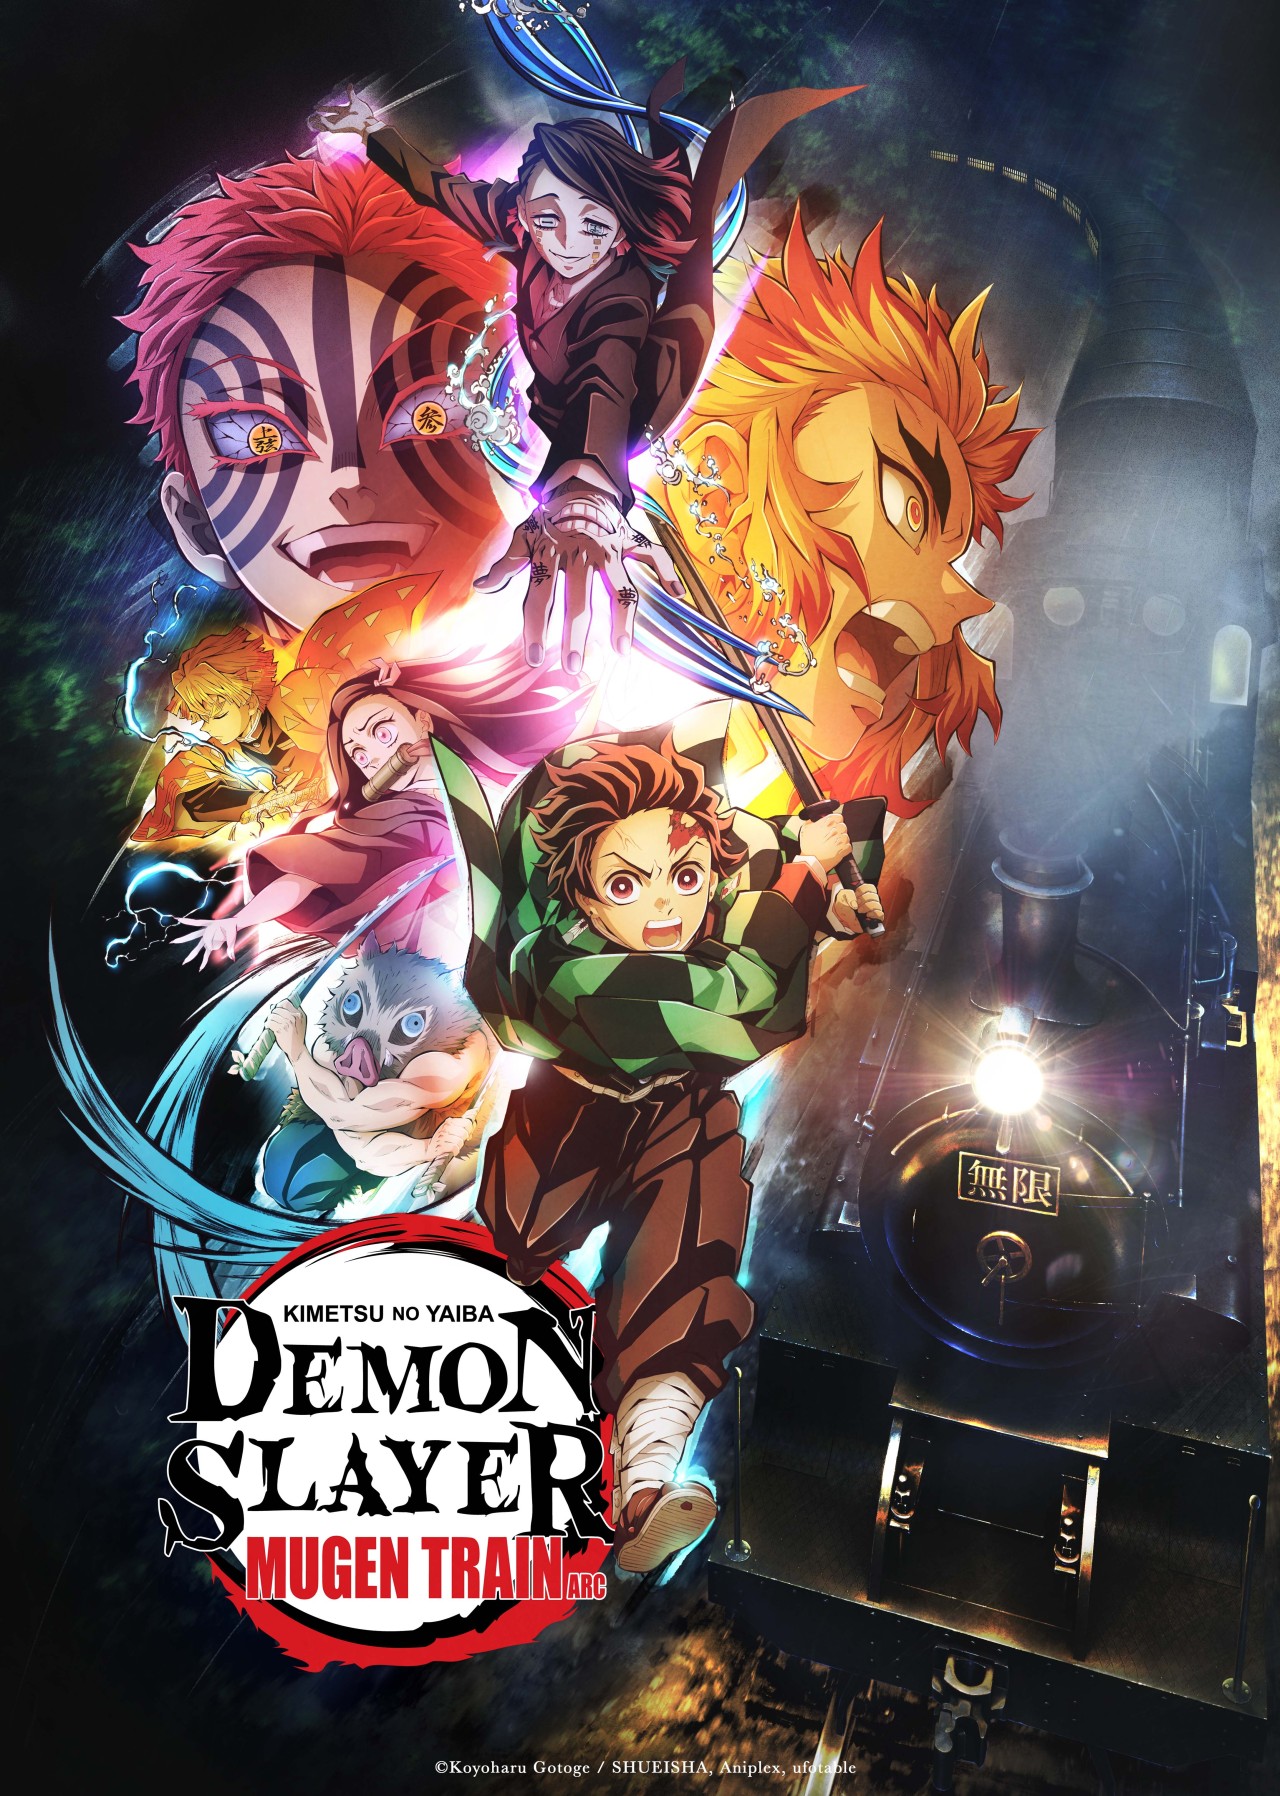 Demon Slayer: Kimetsu no yaiba season 2 episode 7 entertainment district  arc #entertainment #anime 